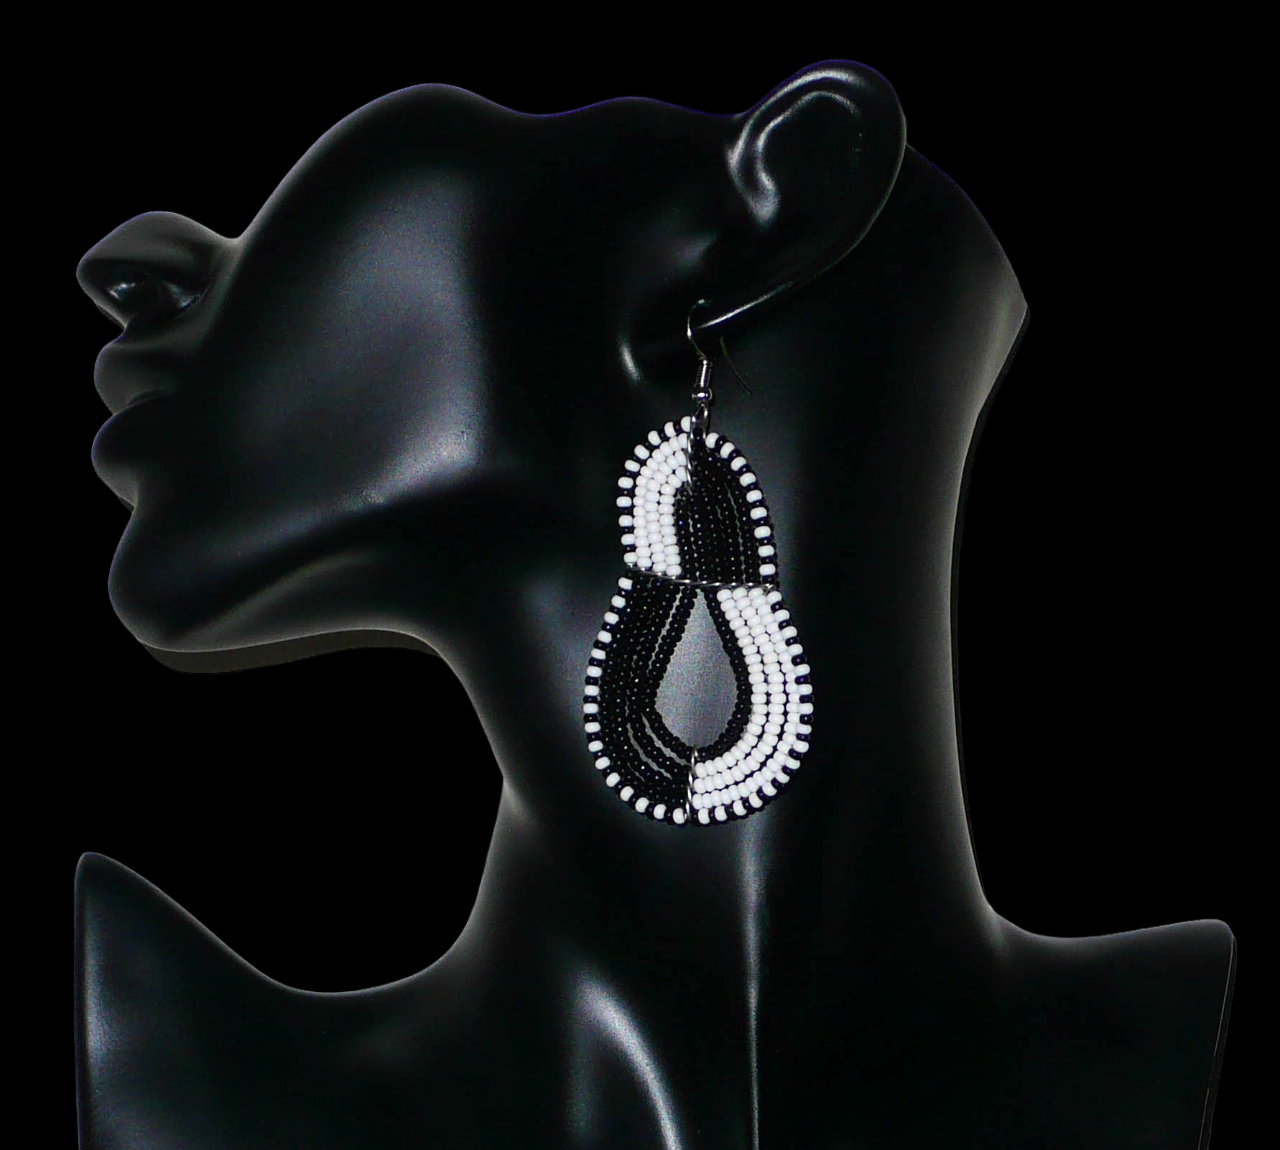 Bijoux noirs et blancs. Boucles d'oreilles kenyanes bicolores composées de perles de rocaille noires et blanches enfilées sur cinq fils de fer montés en forme de poires. Elles mesurent 8 cm de long et 3,8 cm de large et se portent sur des oreilles percées. Timeless Fineries